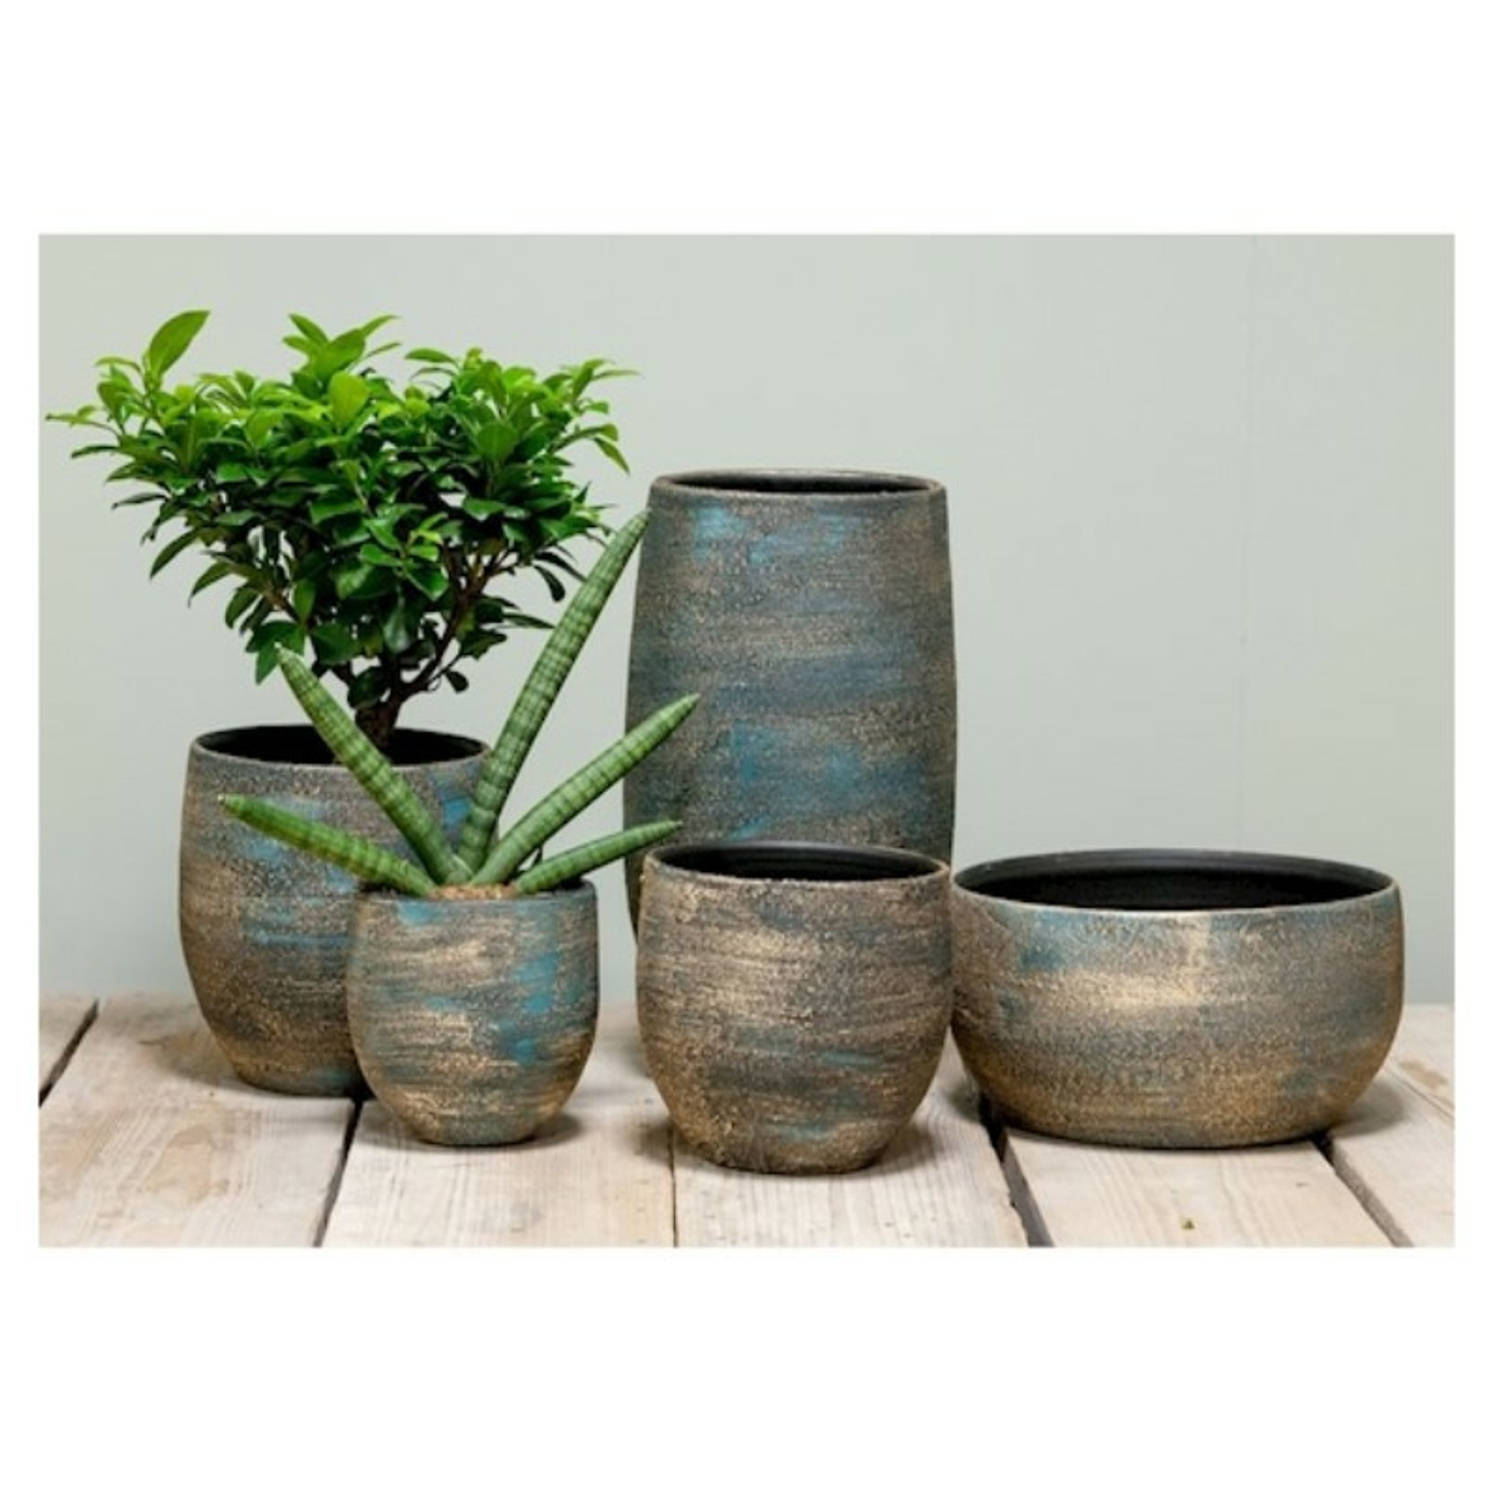 constant snorkel mild Luxe plantenpot/bloempot blauw/goud Madeira van keramiek 14 cm -  Plantenpotten | Blokker